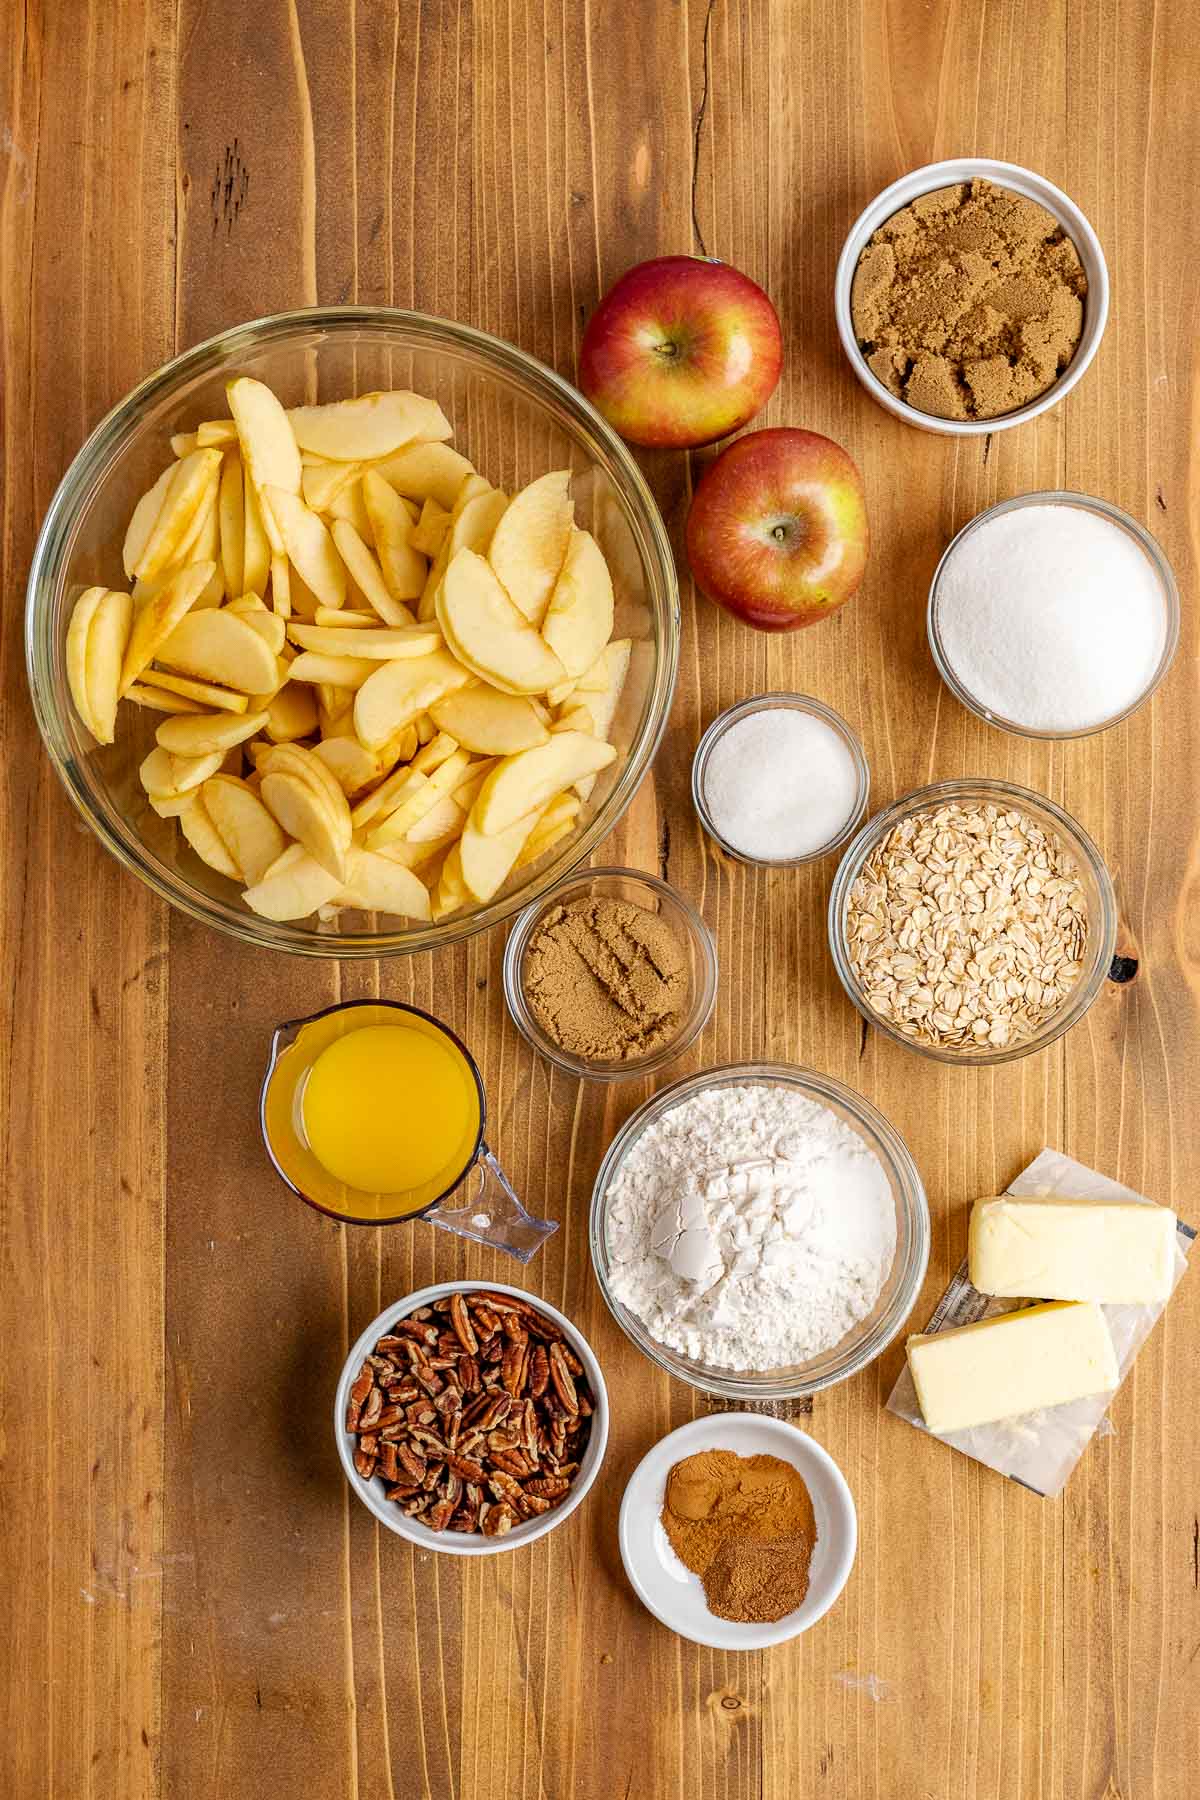 Apple Pecan Crisp ingredients in bowls